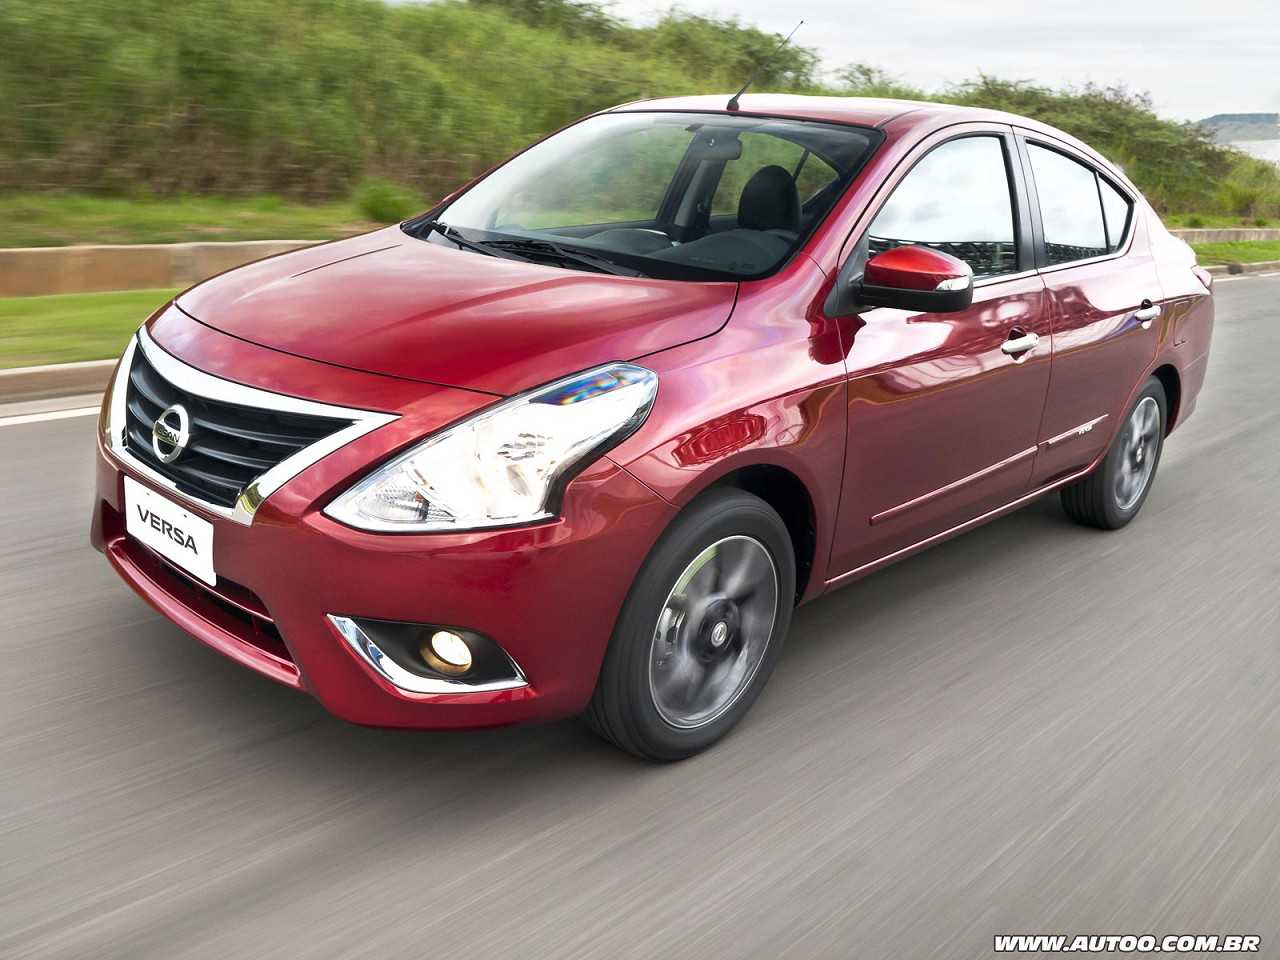 Nissan Versa, Chevrolet Cobalt ou Renault Fluence na compra com isenção?